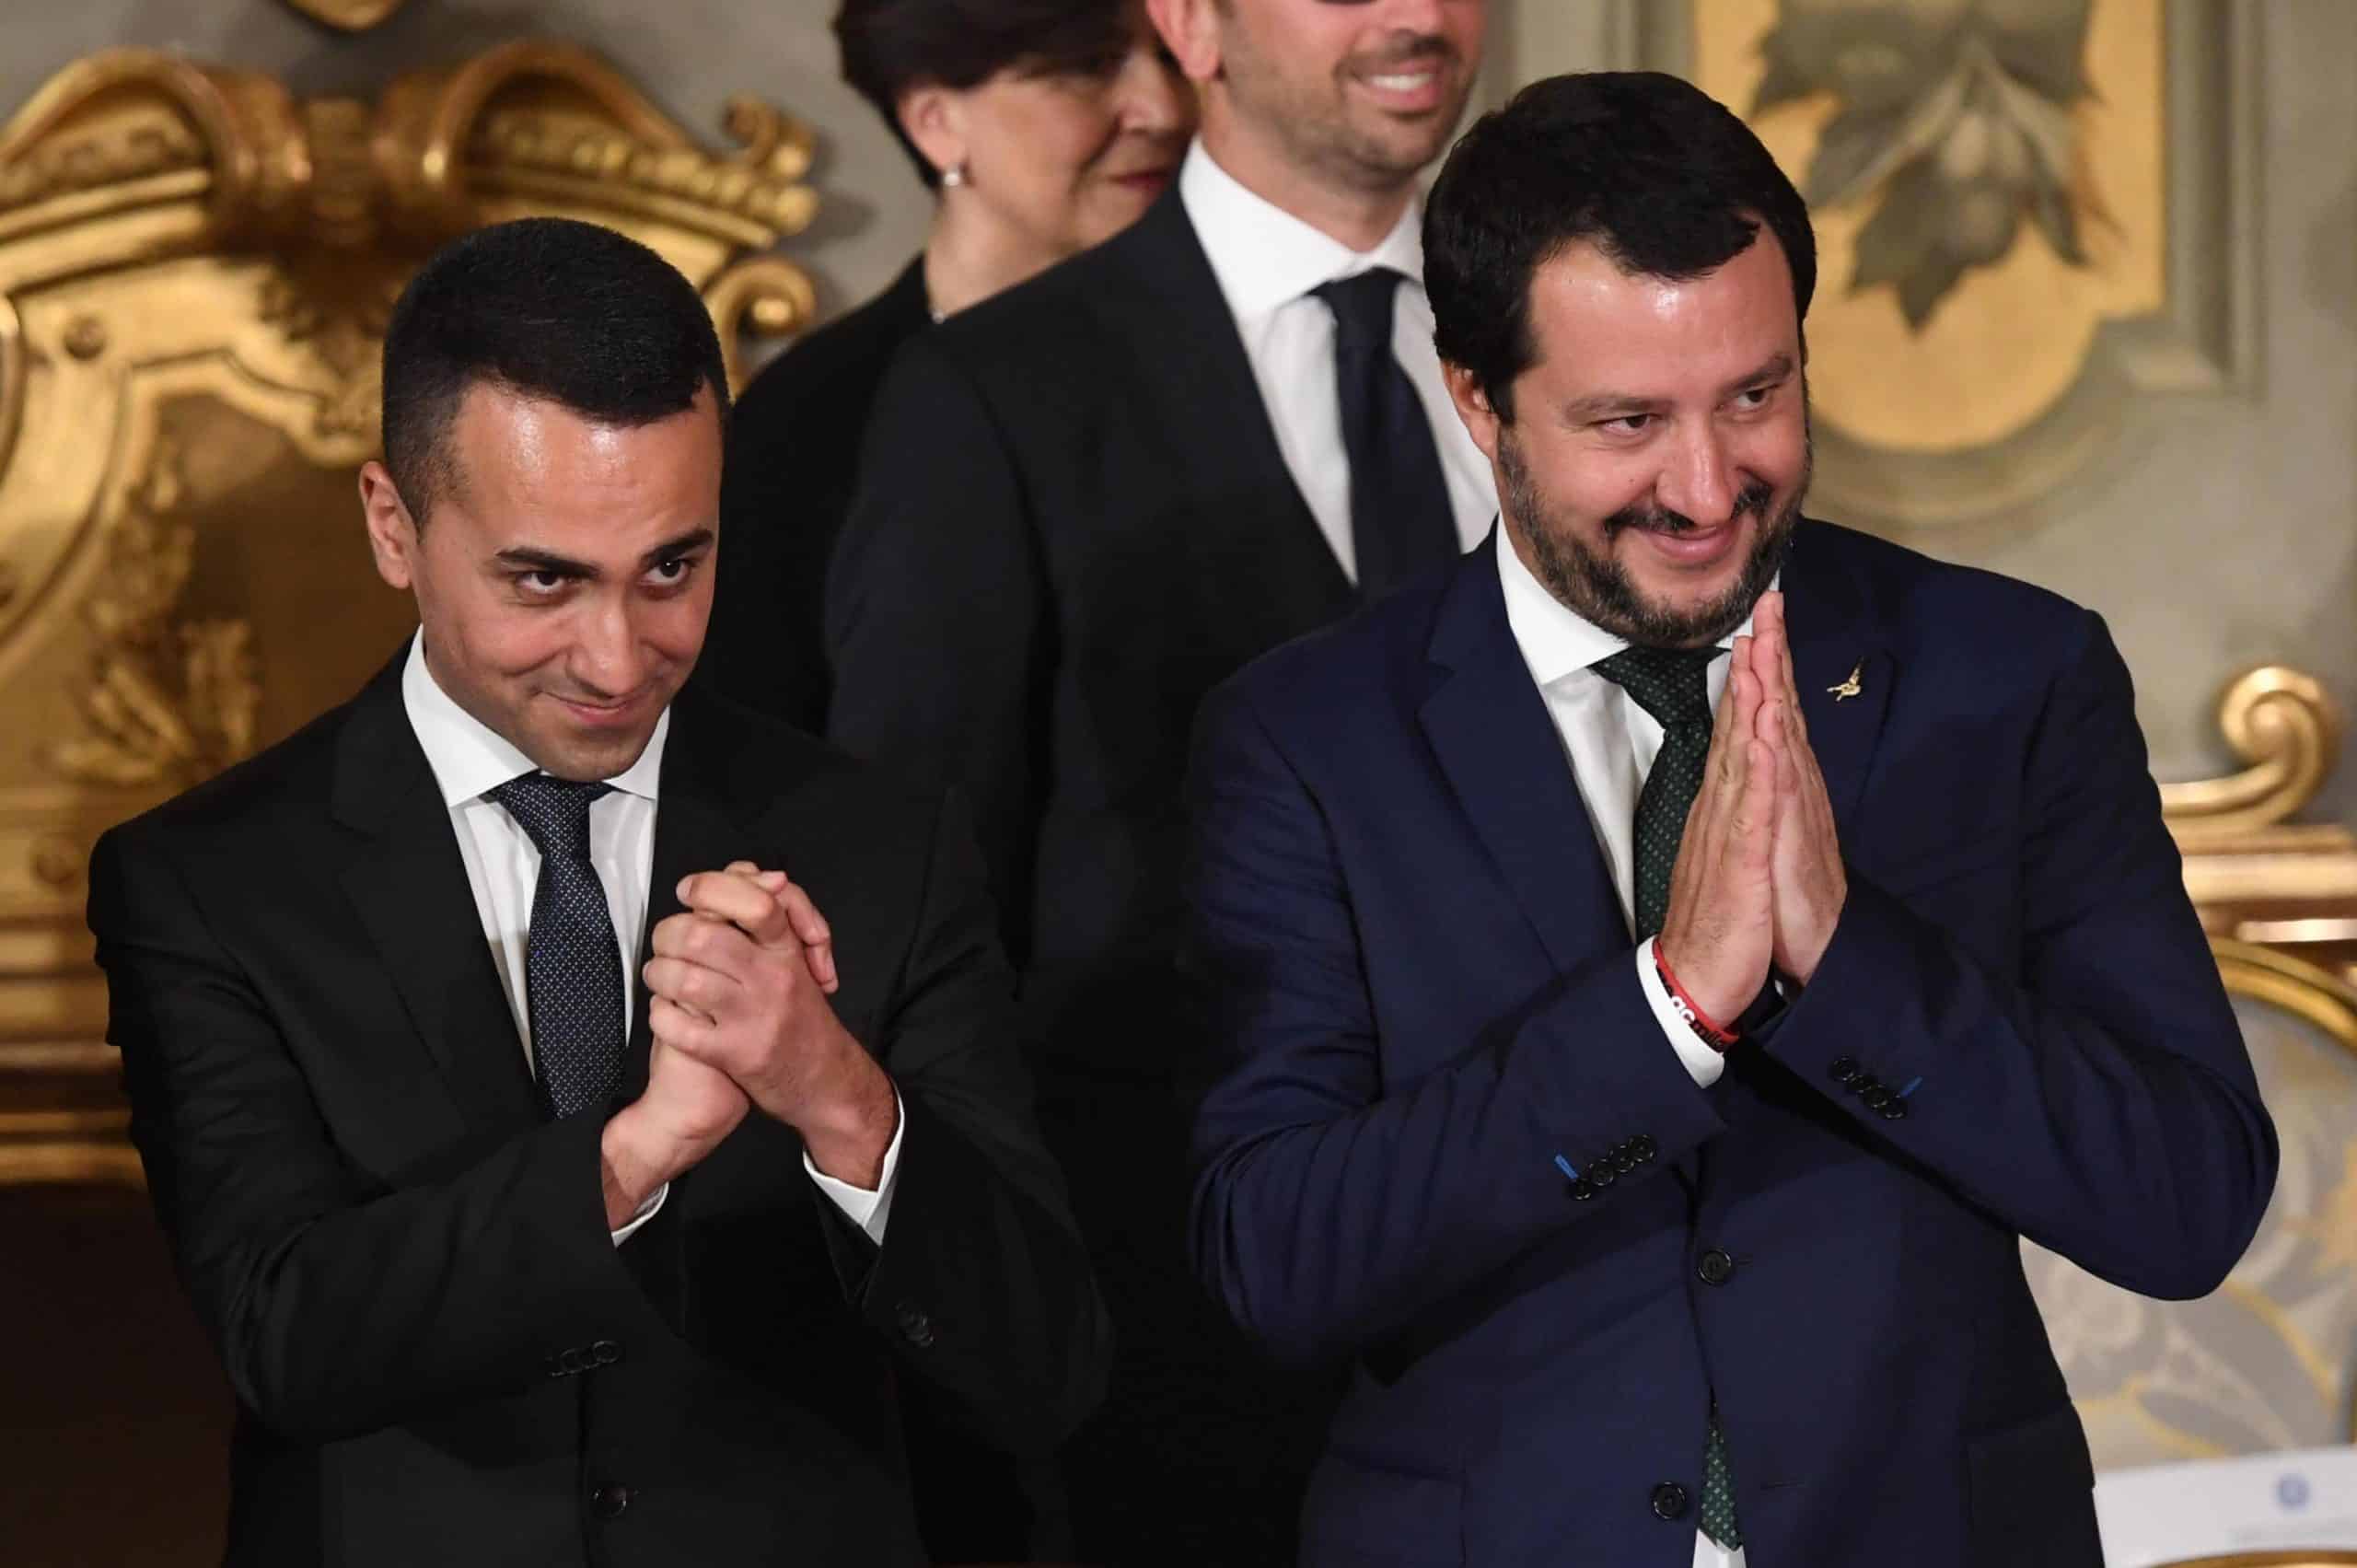 C’eravamo tanto amati…Di Maio durissimo su Salvini “Difende i Benetton e Arcelor non gli italiani è un ca**aro verde”